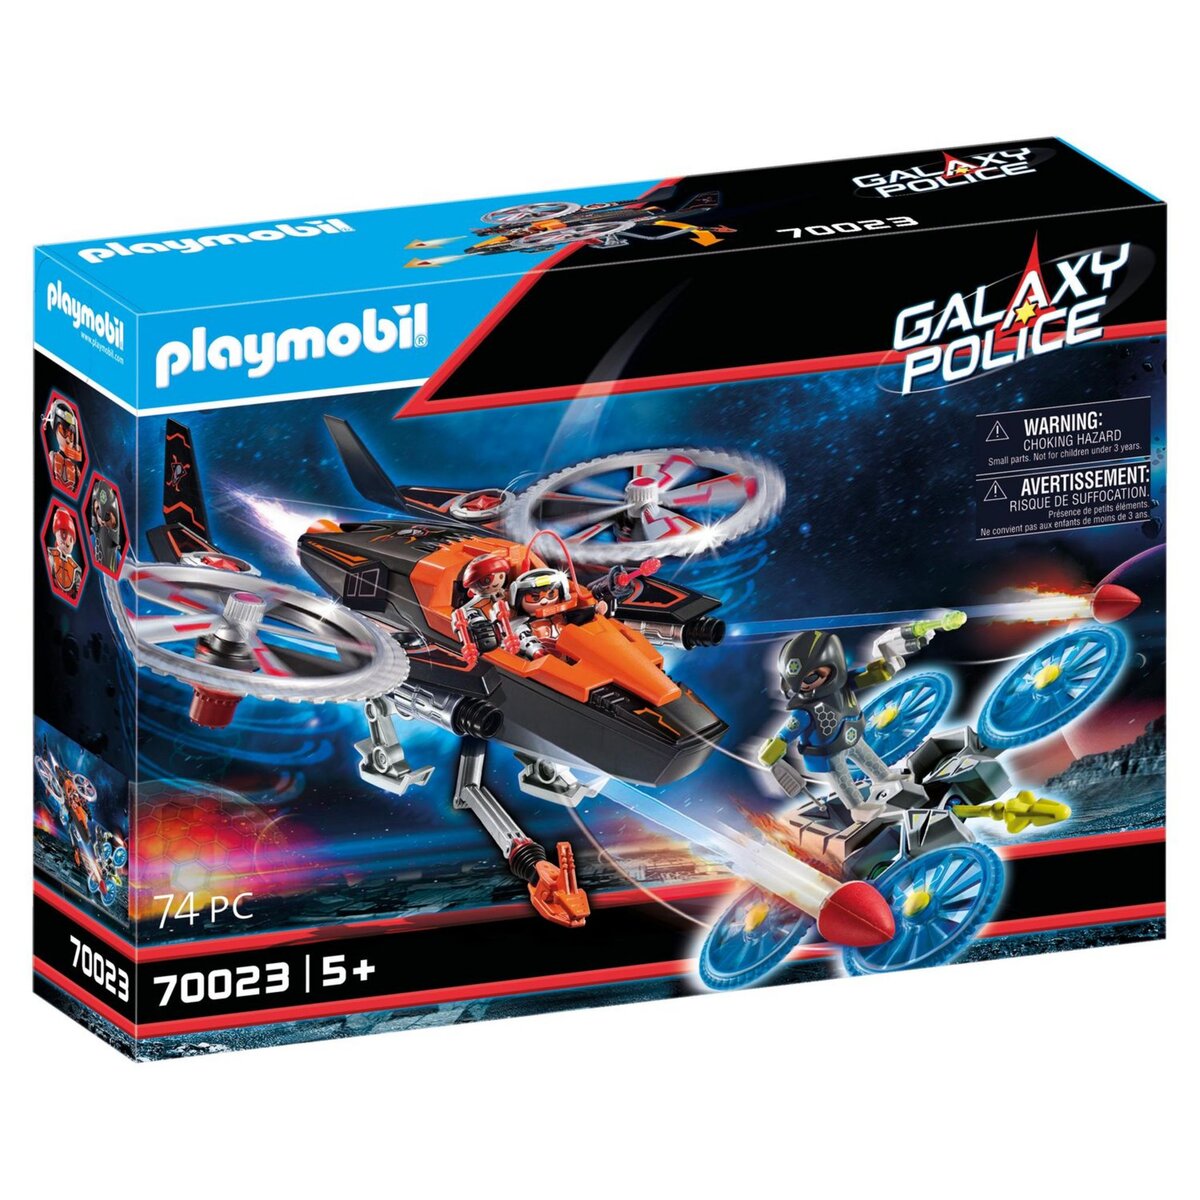 PLAYMOBIL 70023 - Galaxy Police - Hélicoptère et pirates de l'espace